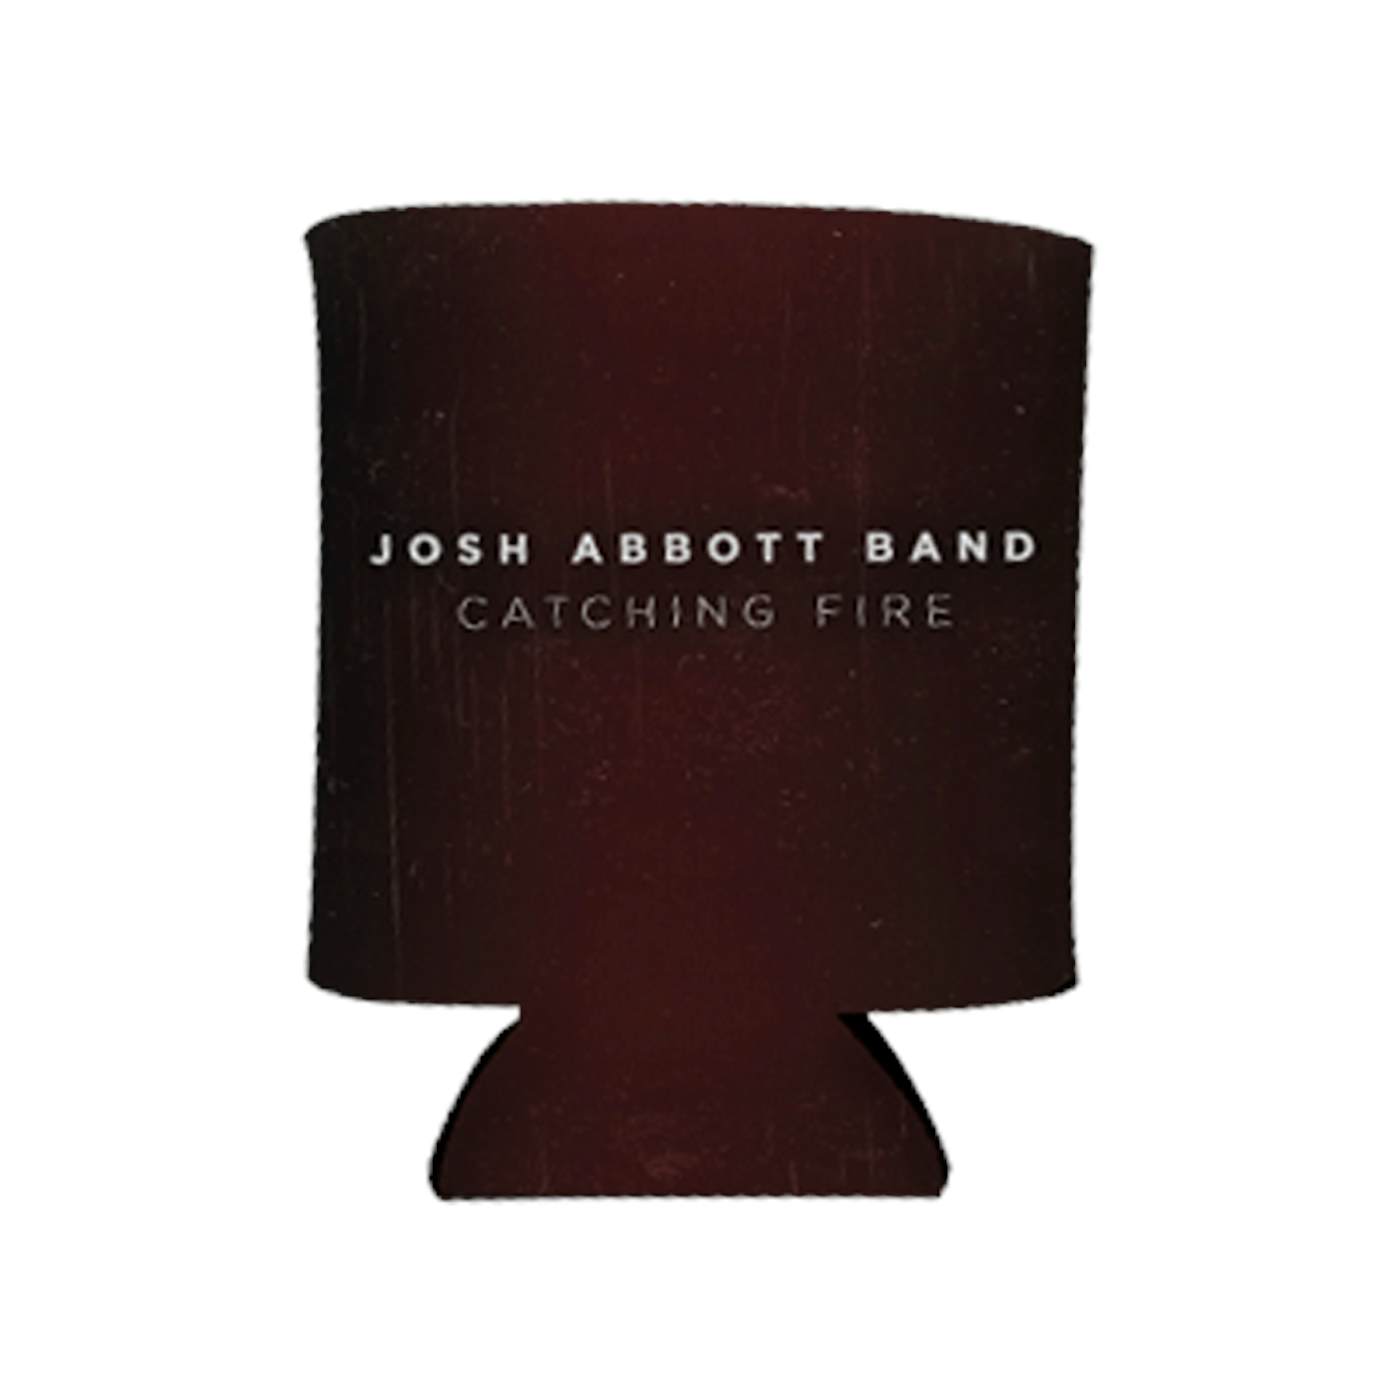 Josh Abbott Band Catching Fire Can Cooler